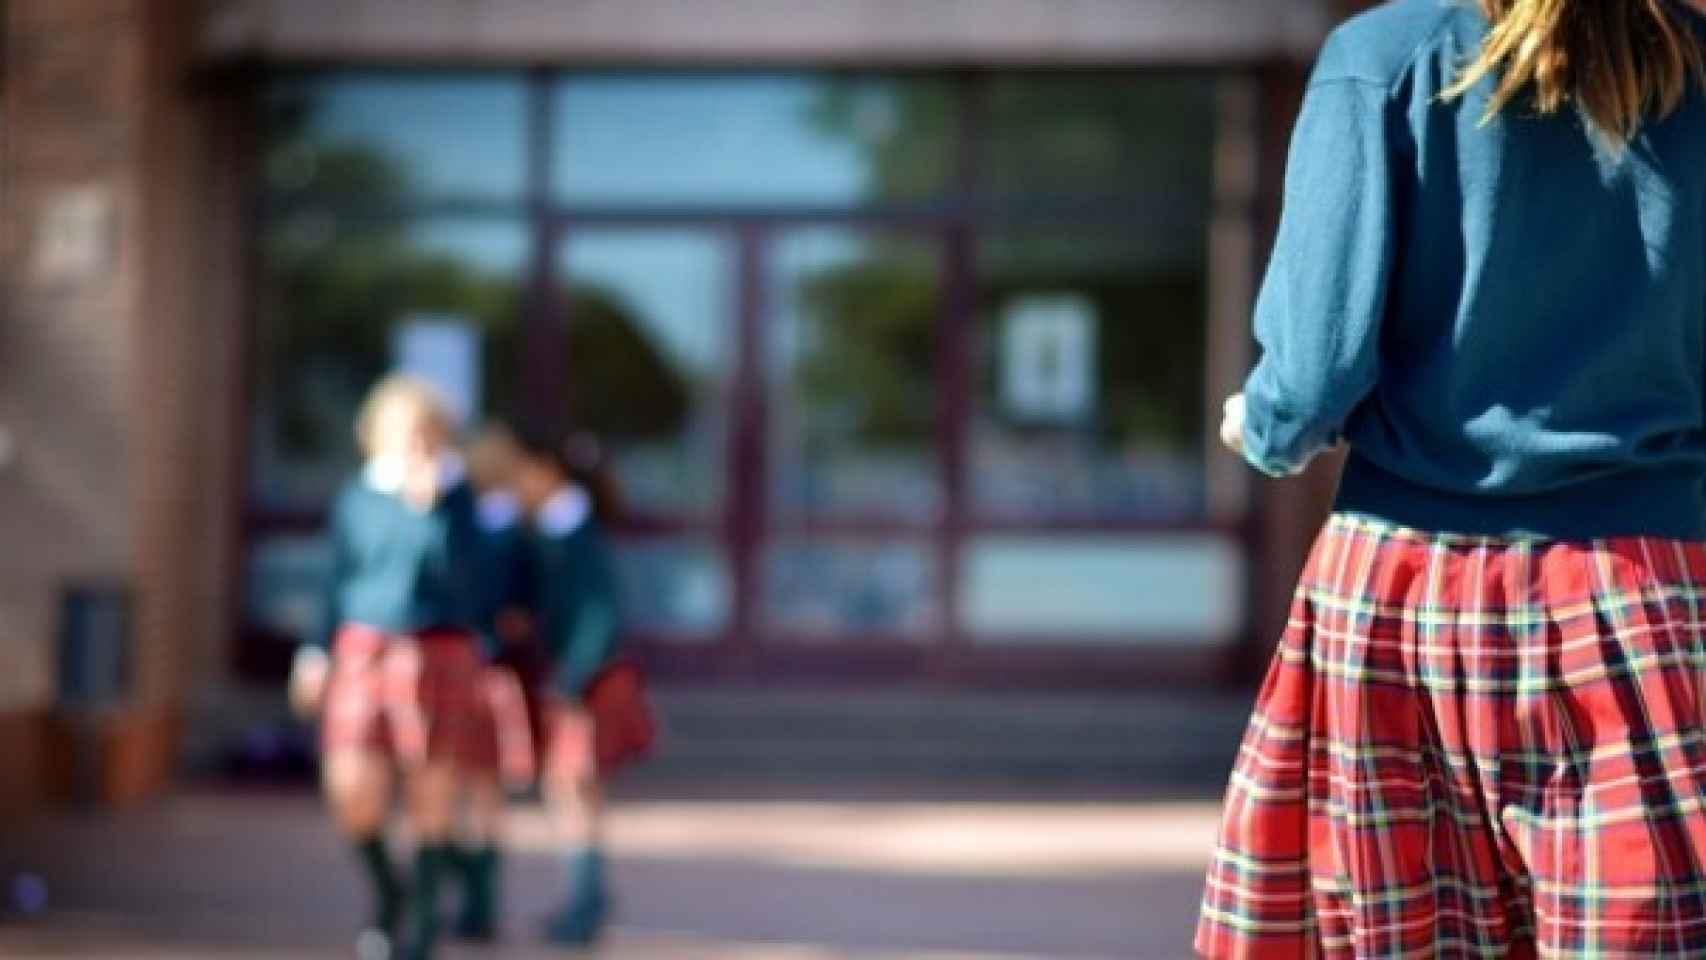 Filosófico tramo objetivo Un colegio católico de Palma elimina el uniforme femenino: "Las niñas  llevan la falda muy corta"